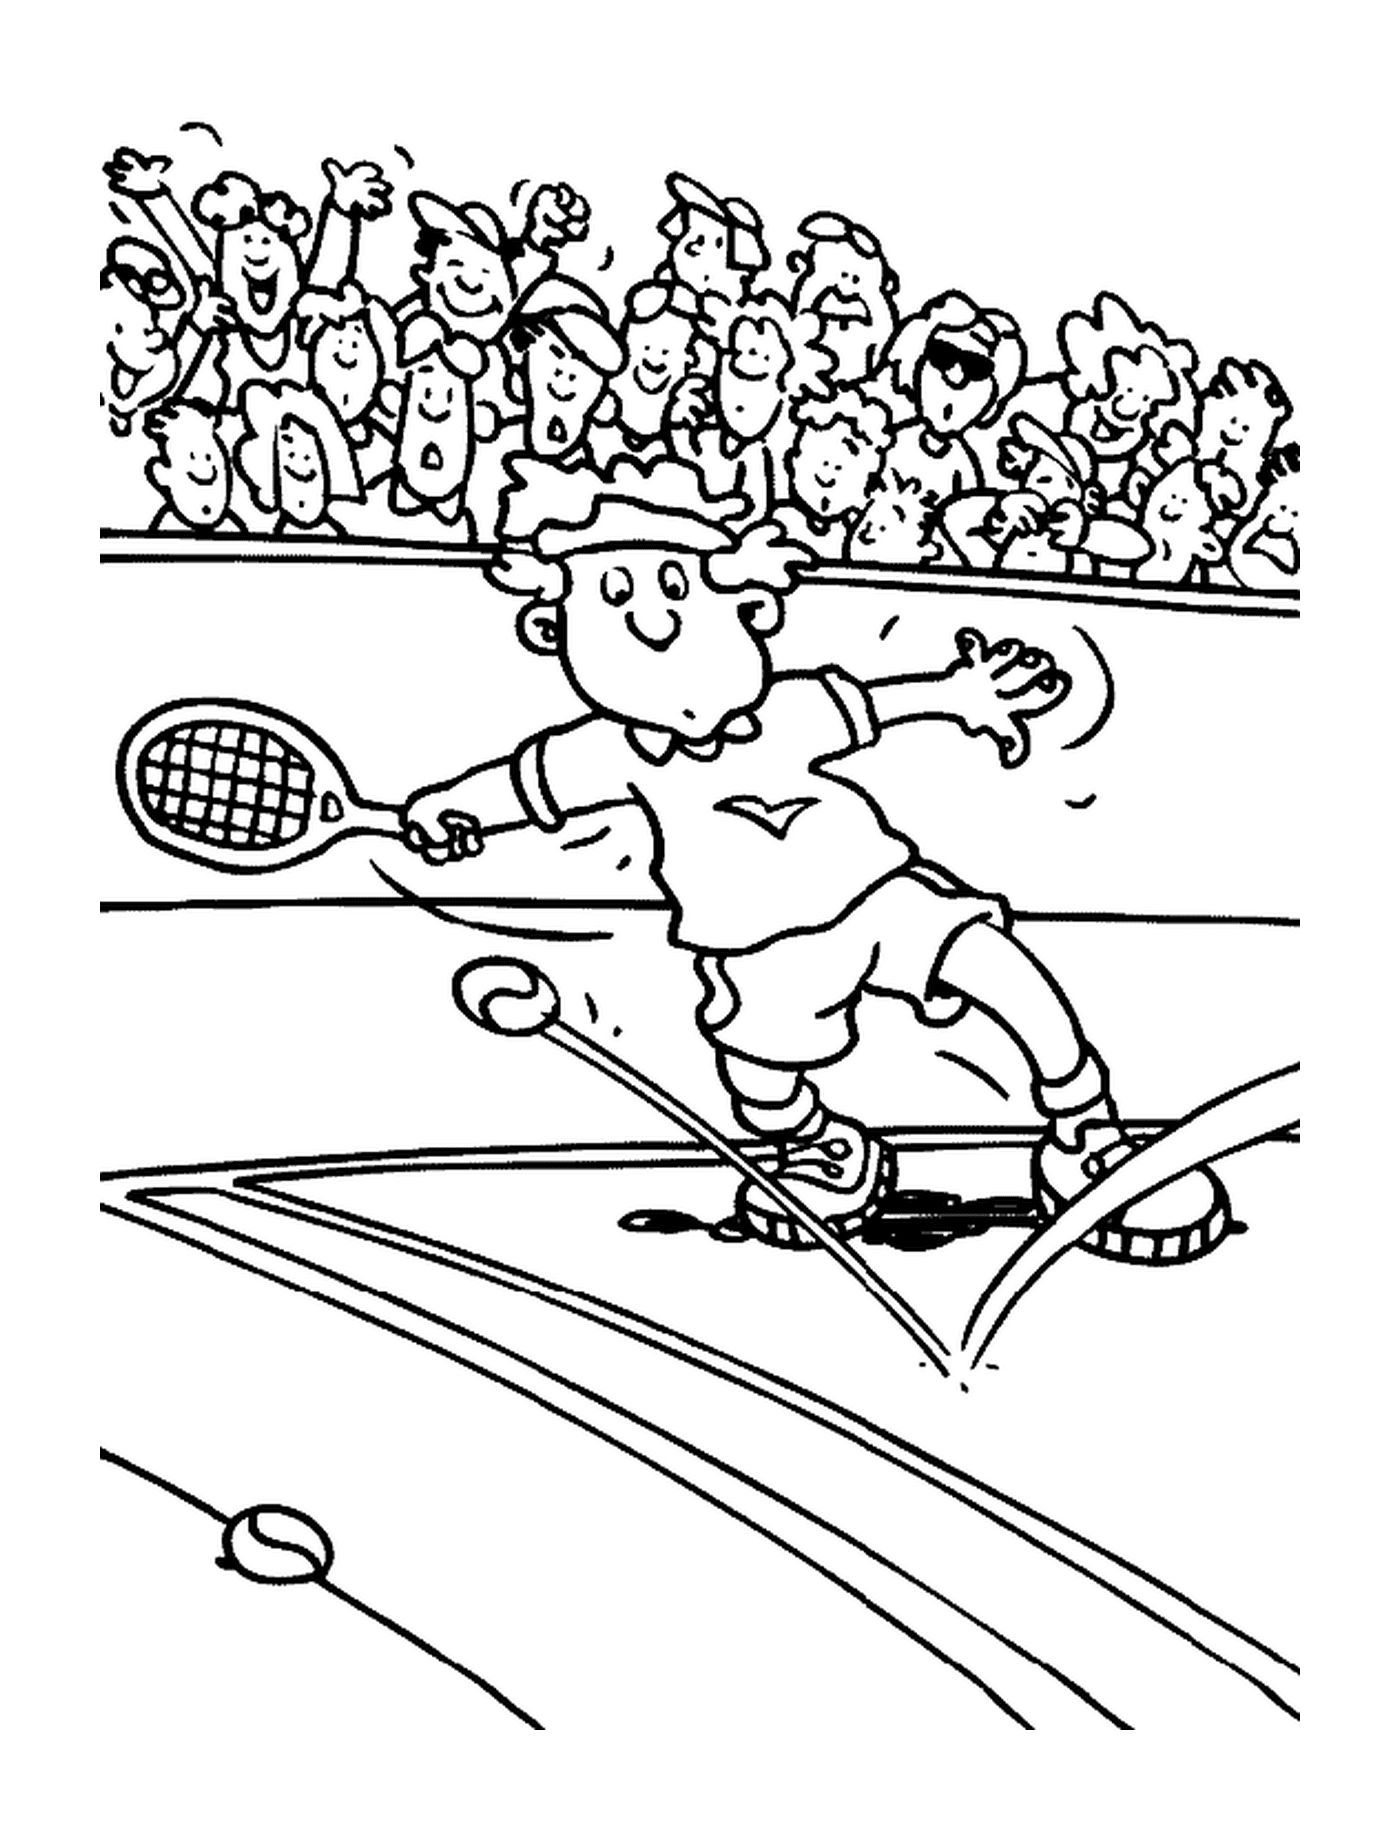  Um homem em ação de tênis 